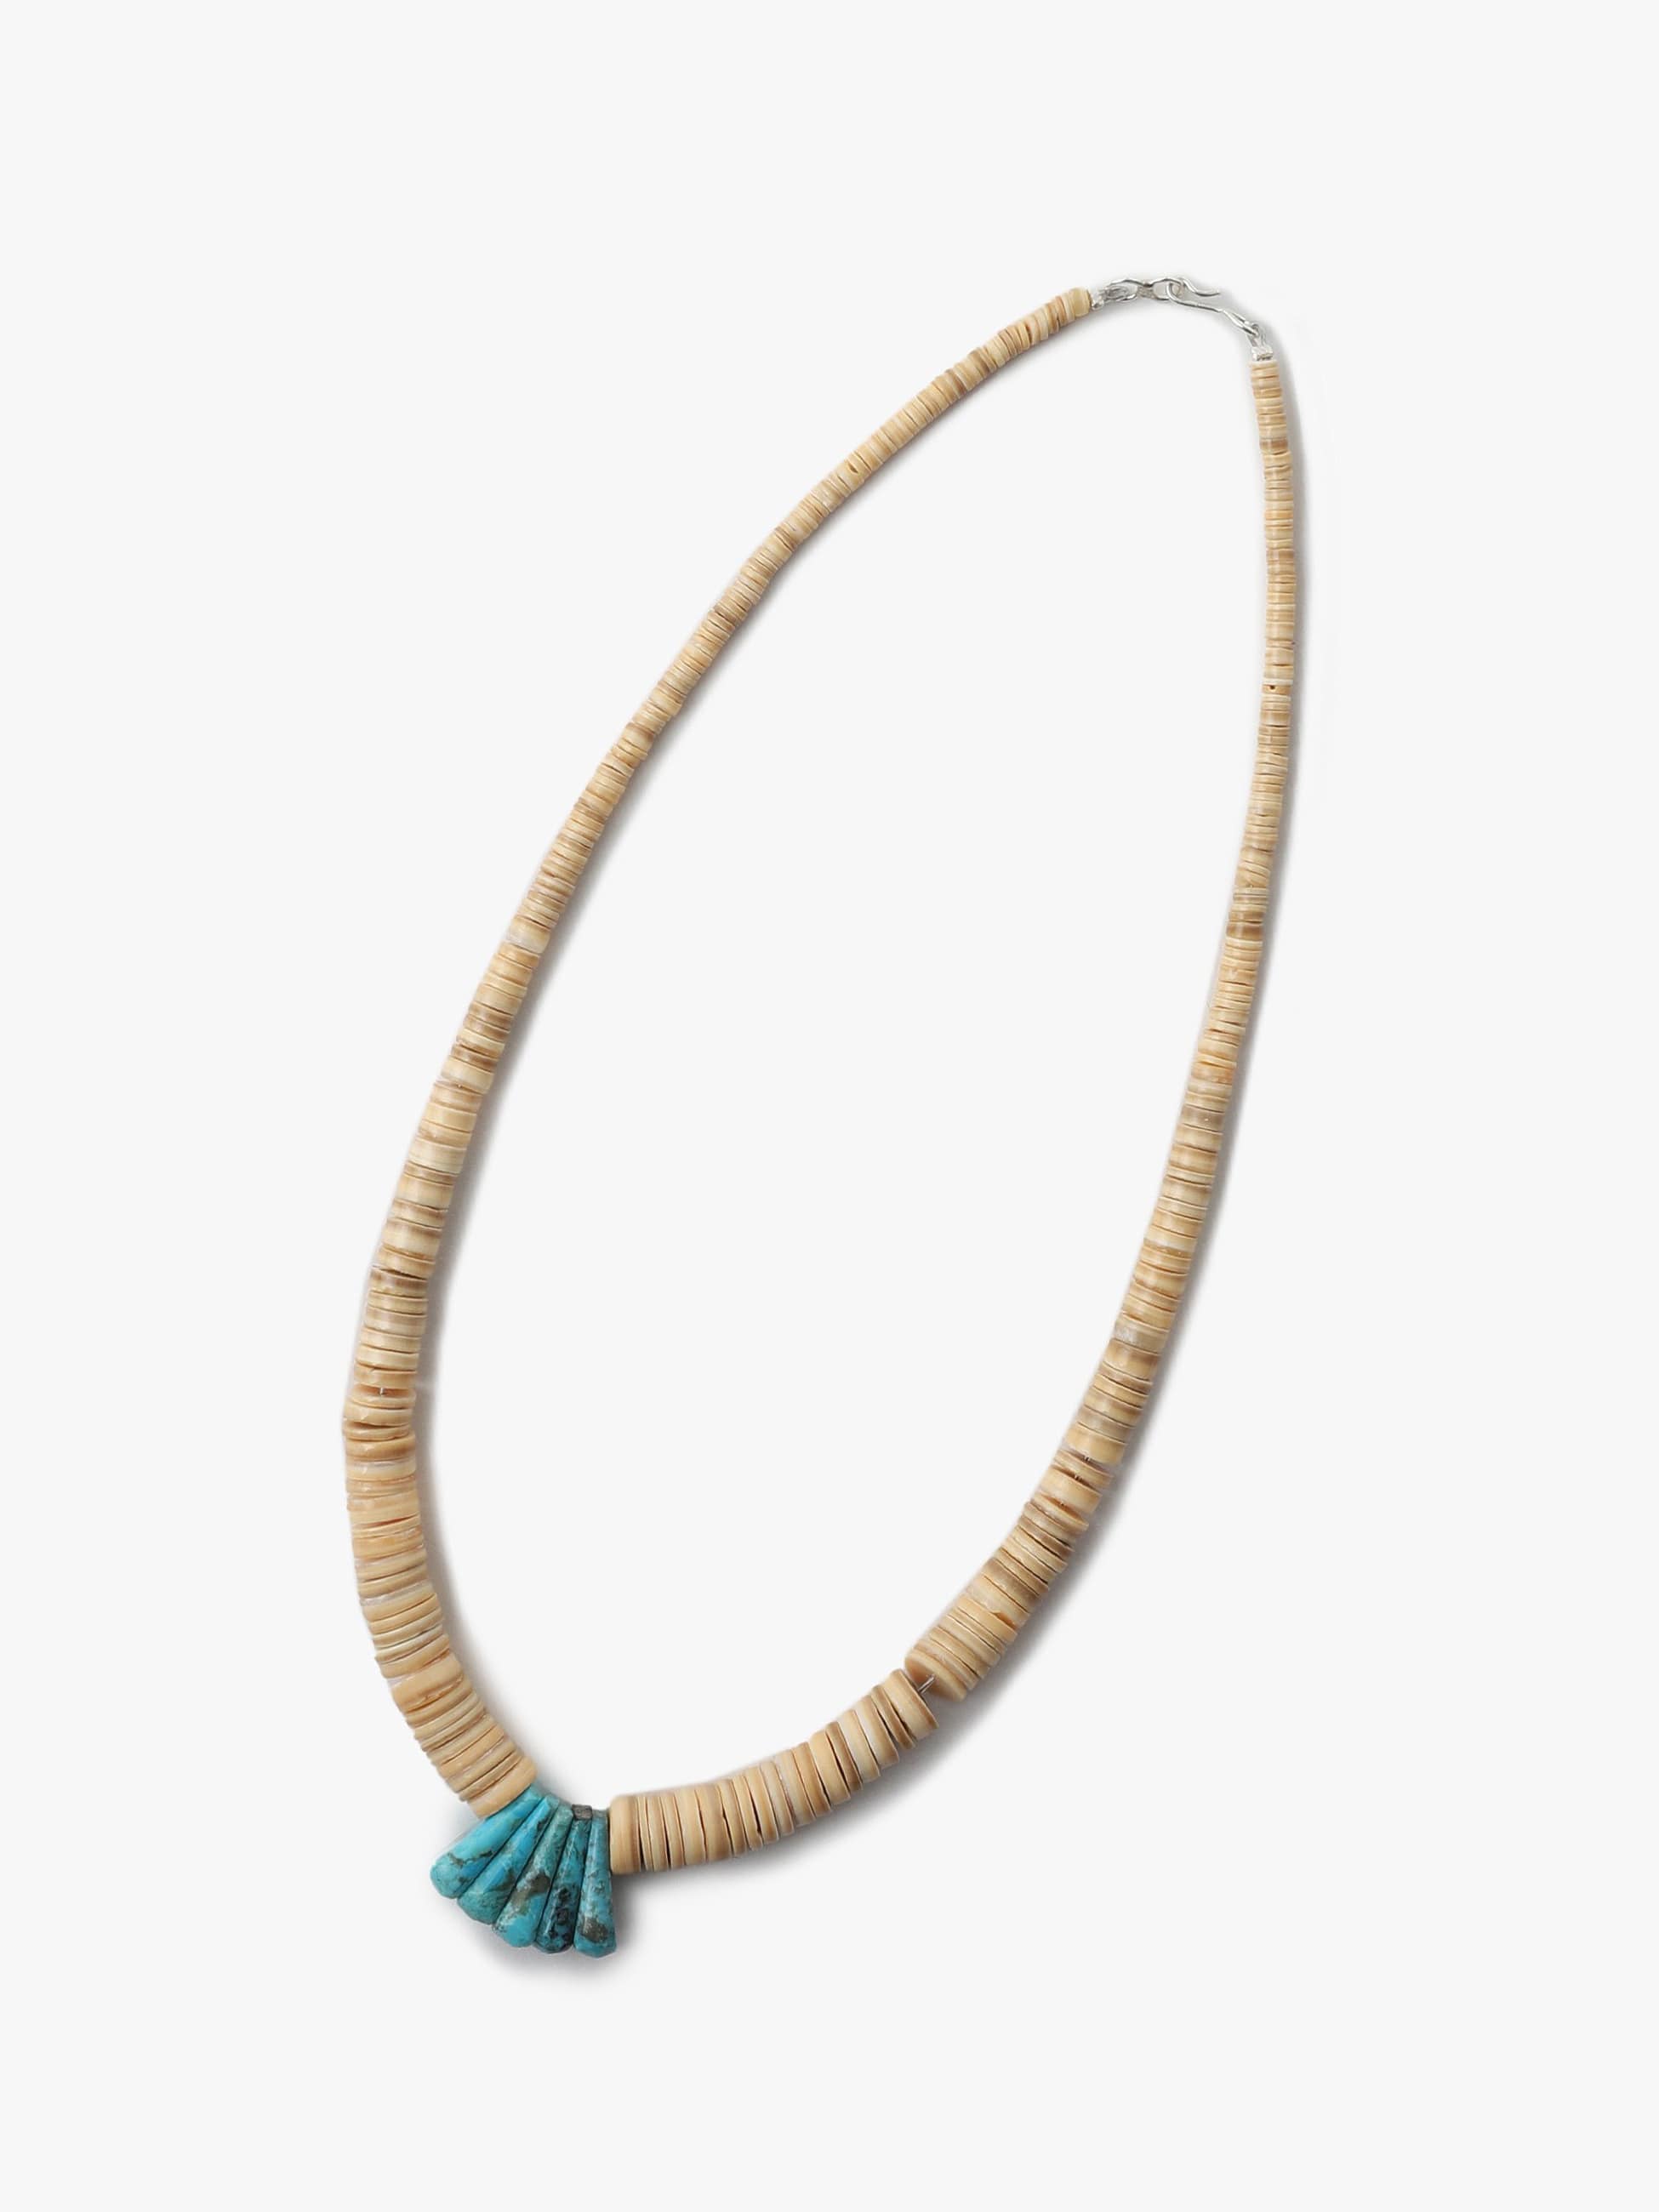 ロンハーマン HARPO Turquoise Necklace ネックレス182cmトップの大きさ